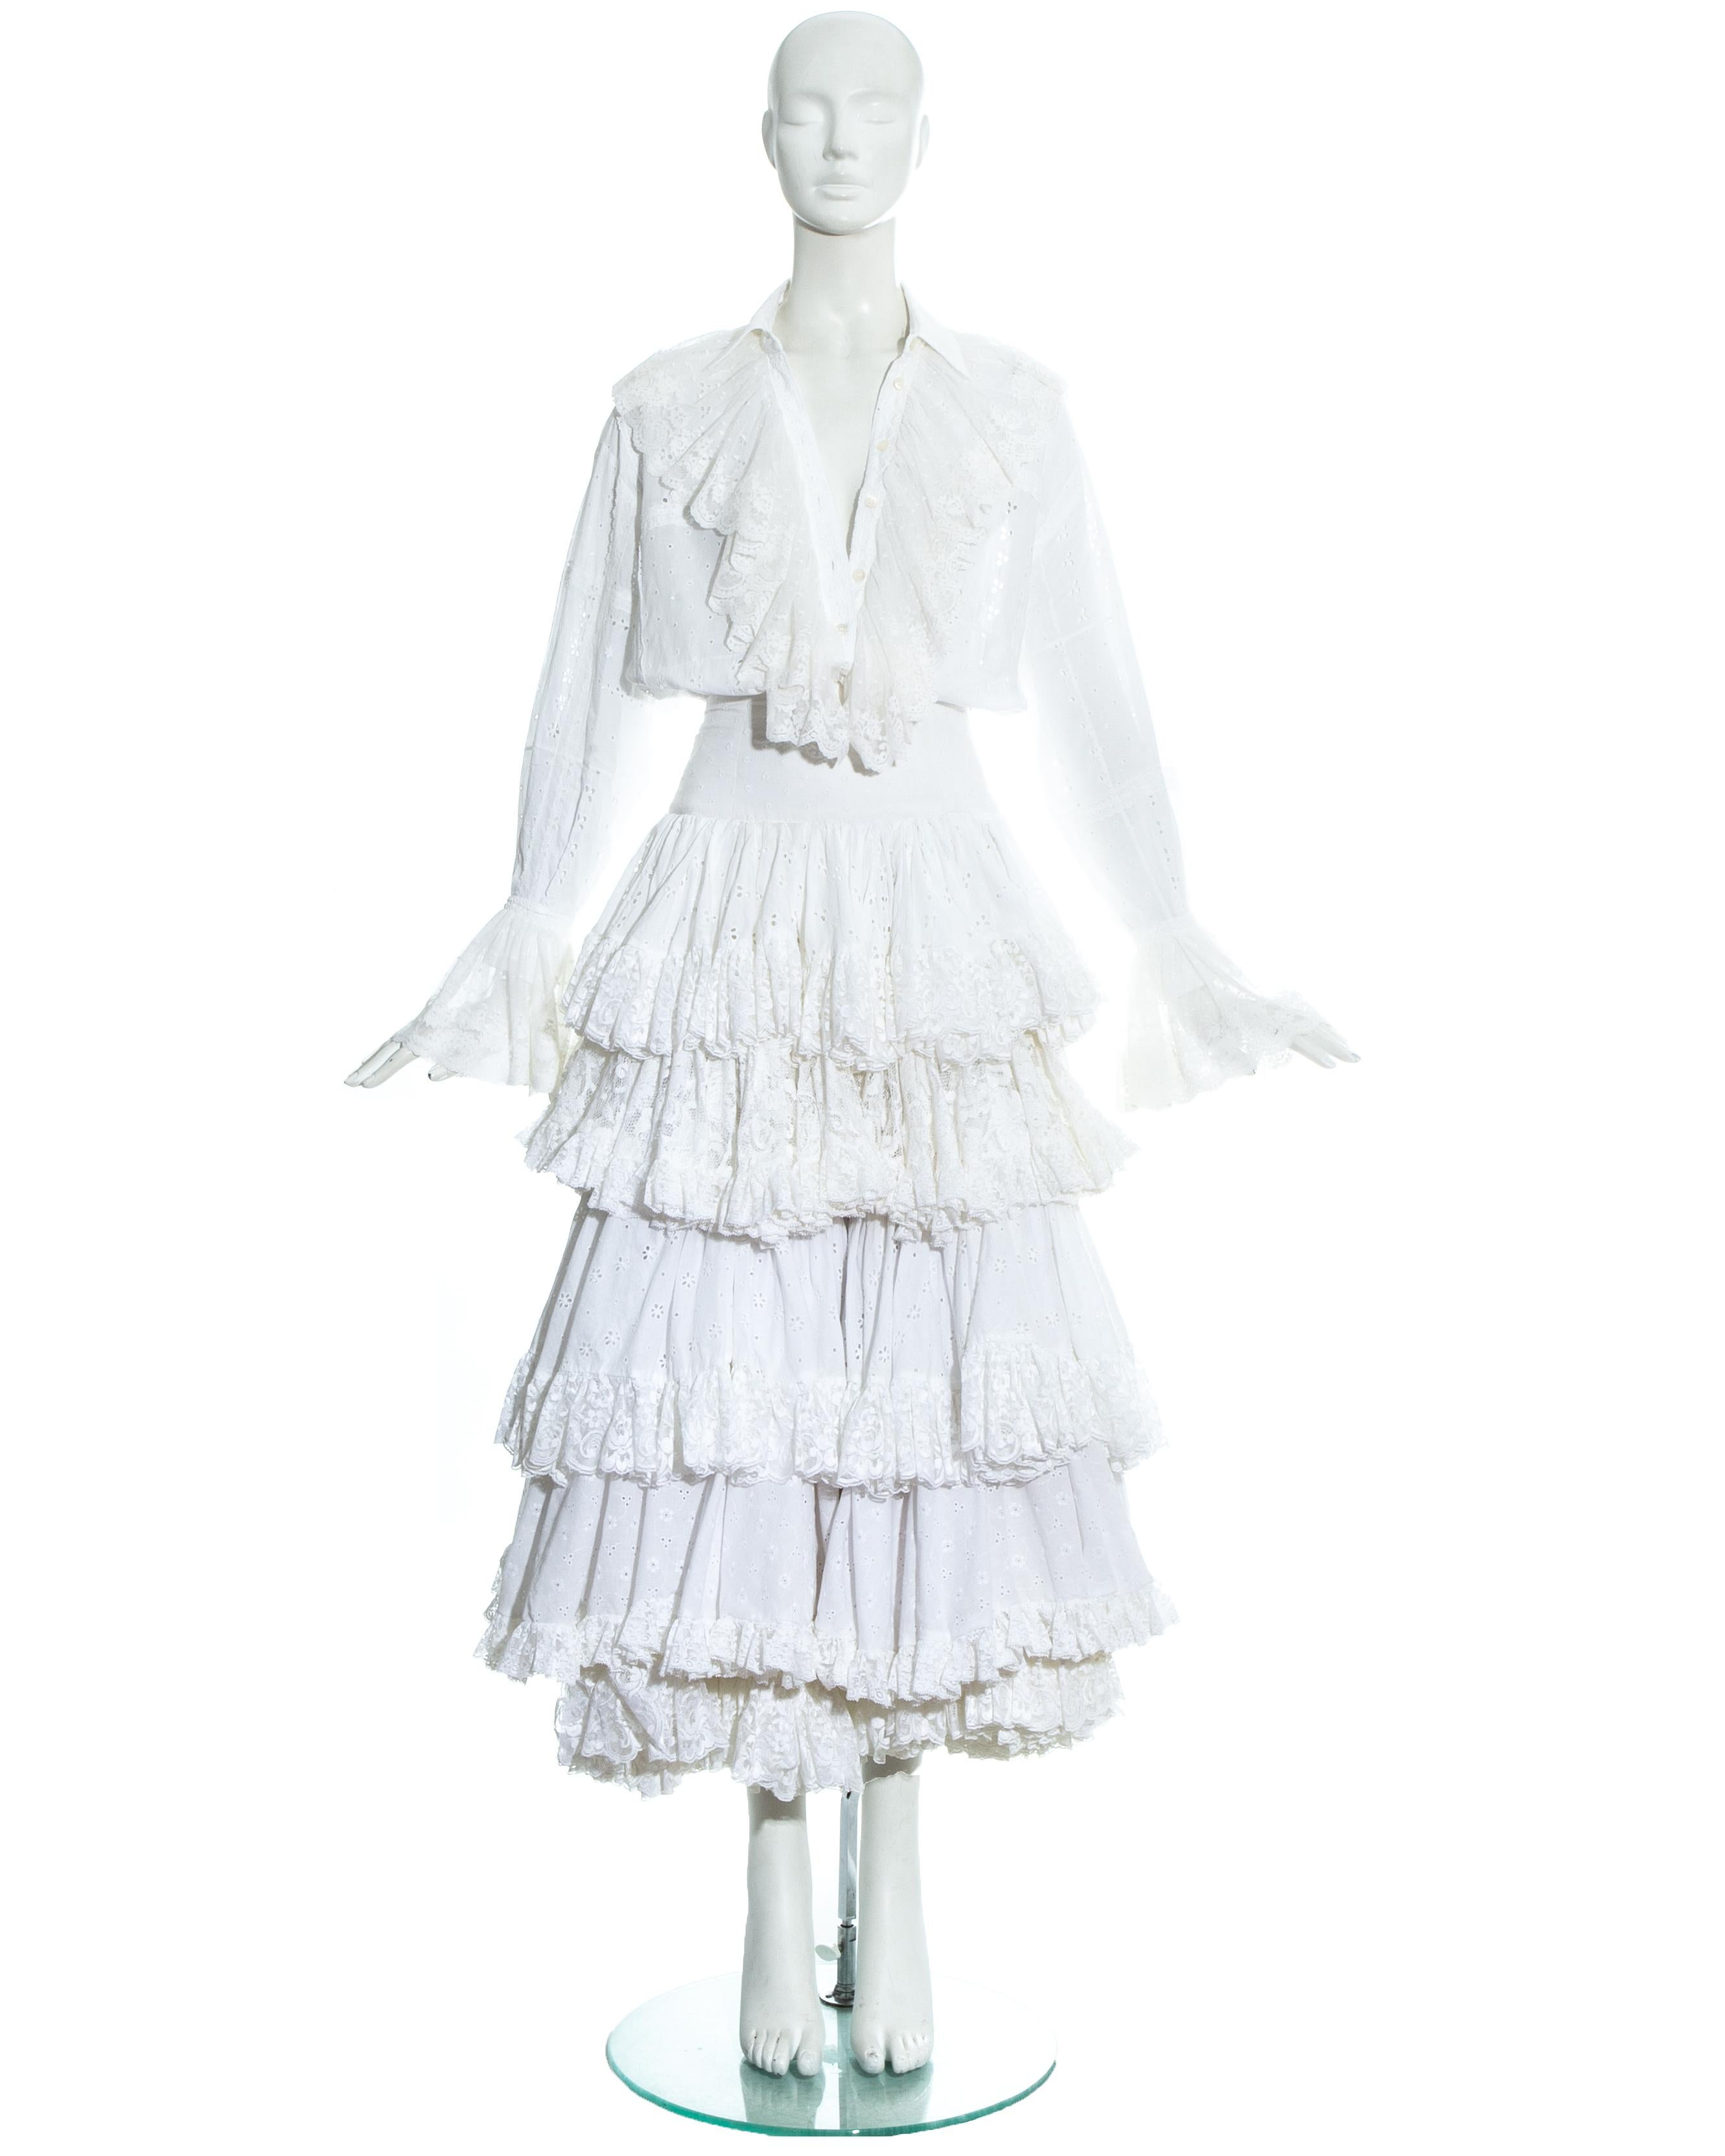 Dolce & Gabbana Rock und Bluse aus weißer Baumwolle mit Lochstickerei und Spitze. Schwerer Lagenrock mit akzentuierter Taille und Dichterbluse mit Spitzenrüschen. 

Frühjahr-Sommer 1993